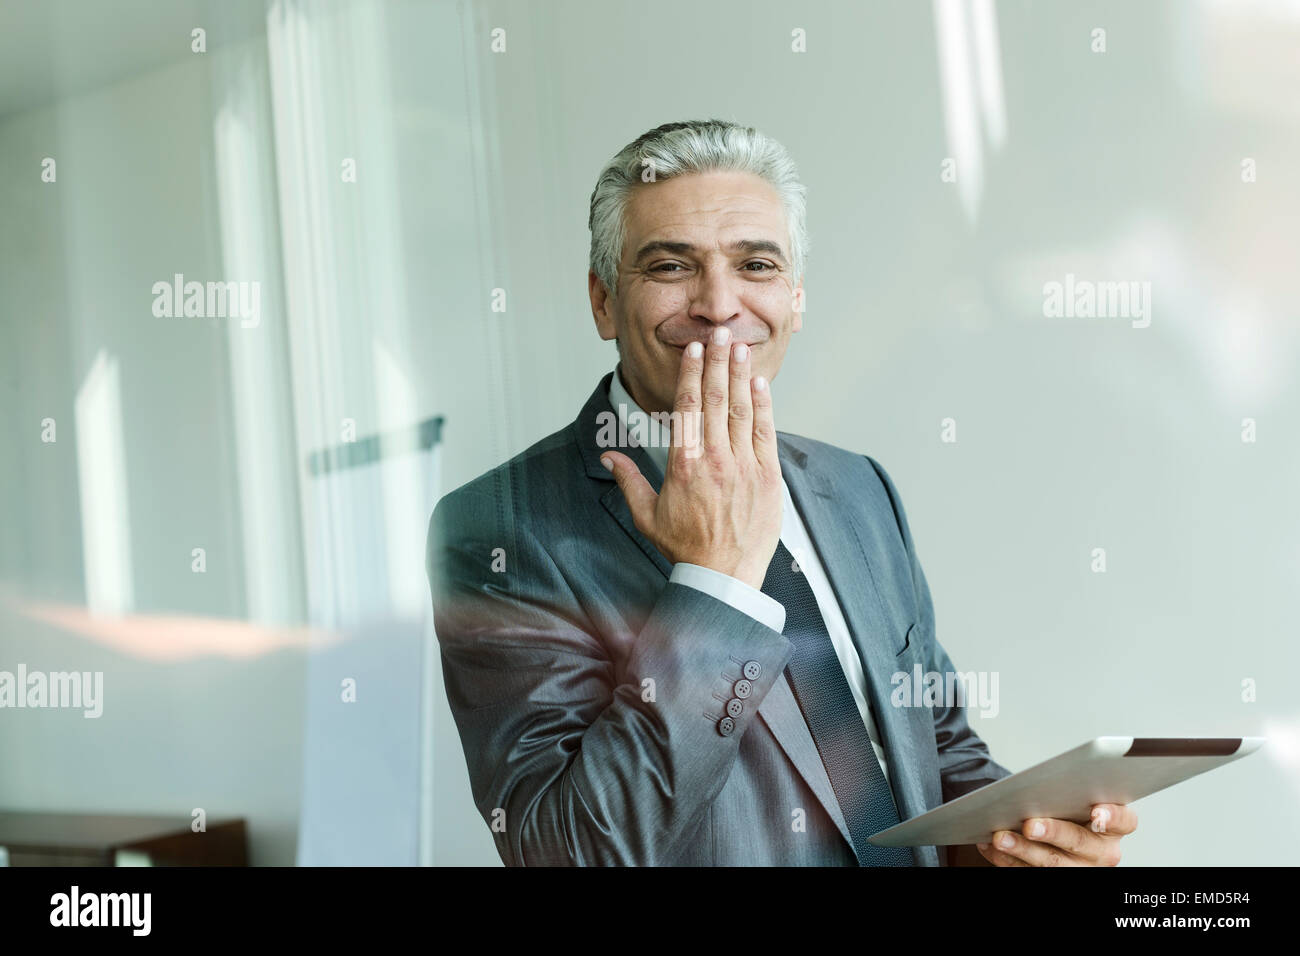 businessman-holding-digital-tablet-hand-on-mouth-giggling-EMD5R4.jpg